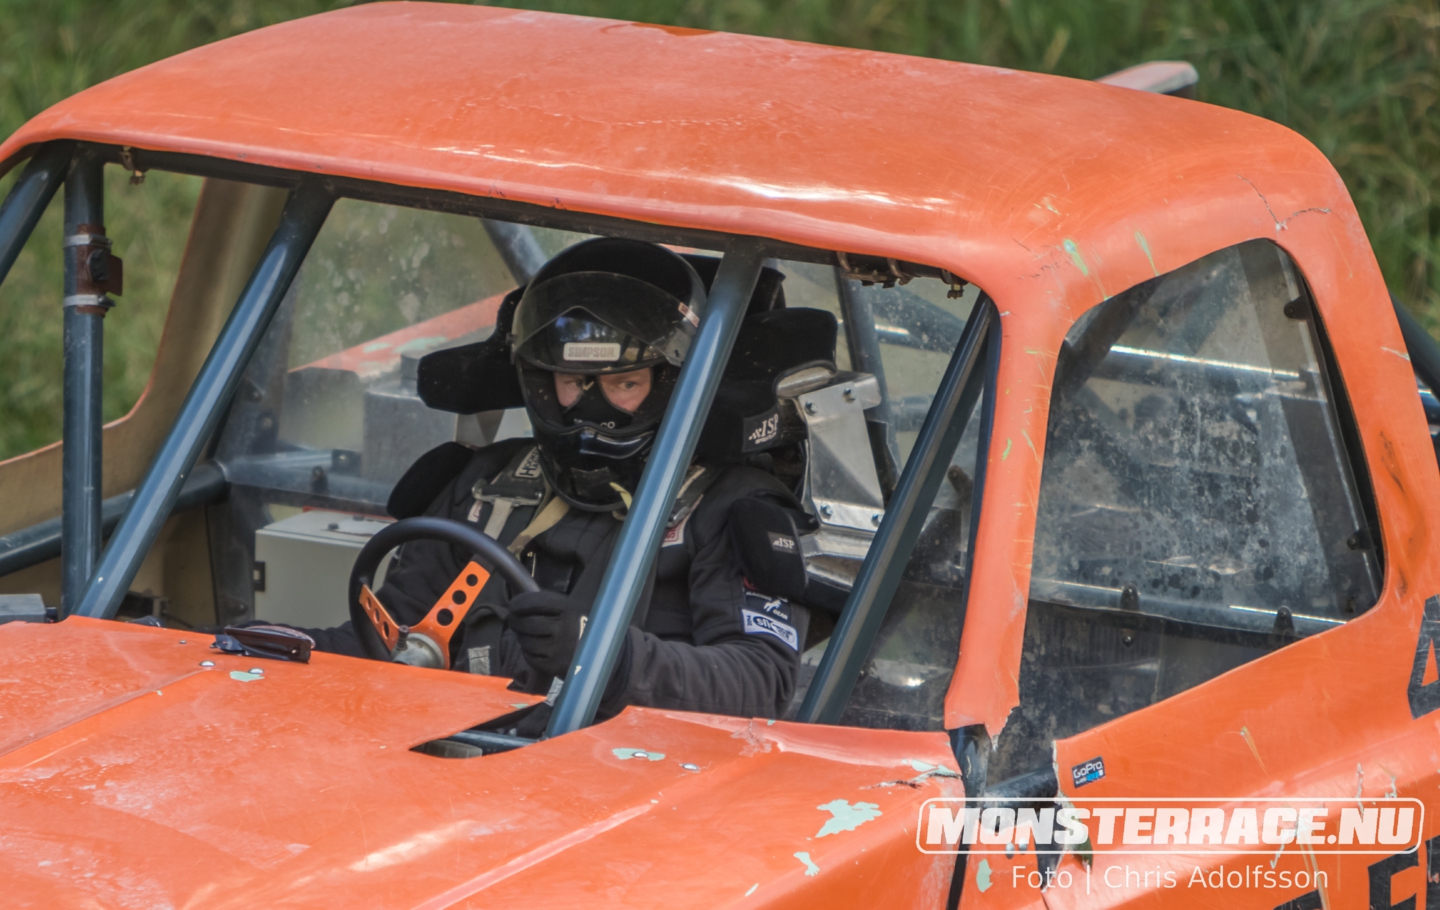 Monsterrace Ed dag 1 (77)